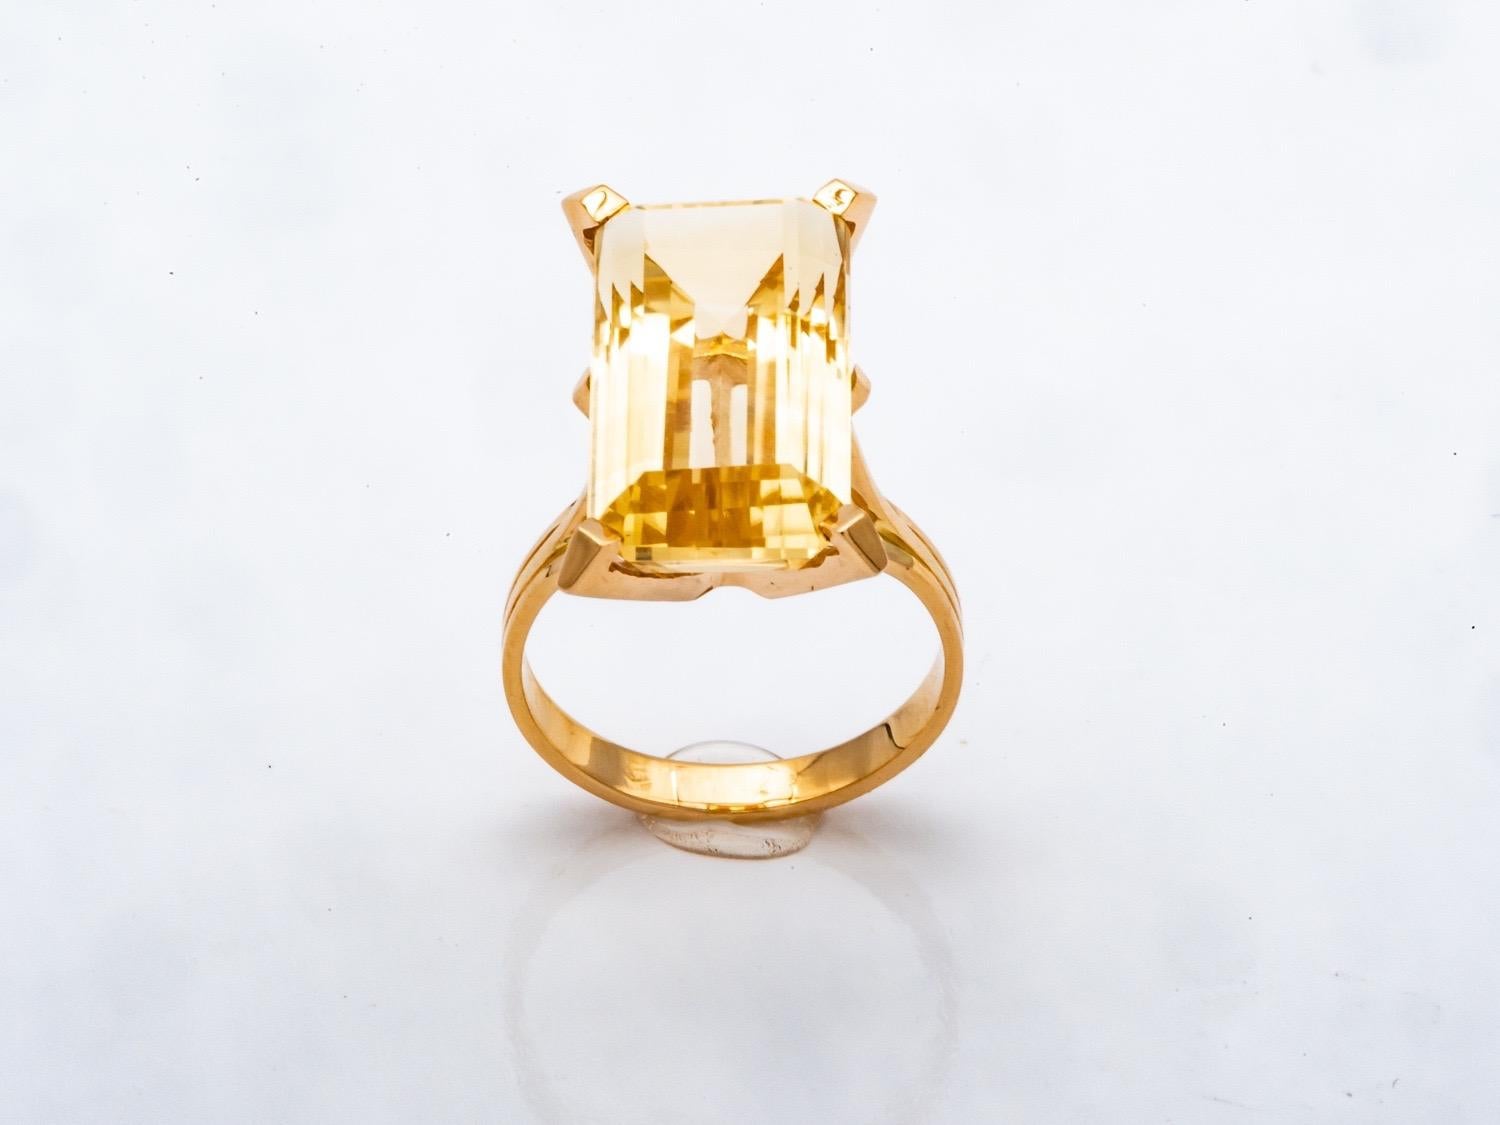 Découvrez cette superbe bague en or jaune 18 carats ornée d'une magnifique citrine de taille émeraude. Avec son sertissage en palette sur un anneau gravé à 3 rangs, cette bague est un véritable bijou vintage typique des années 1960-1970.

La pièce